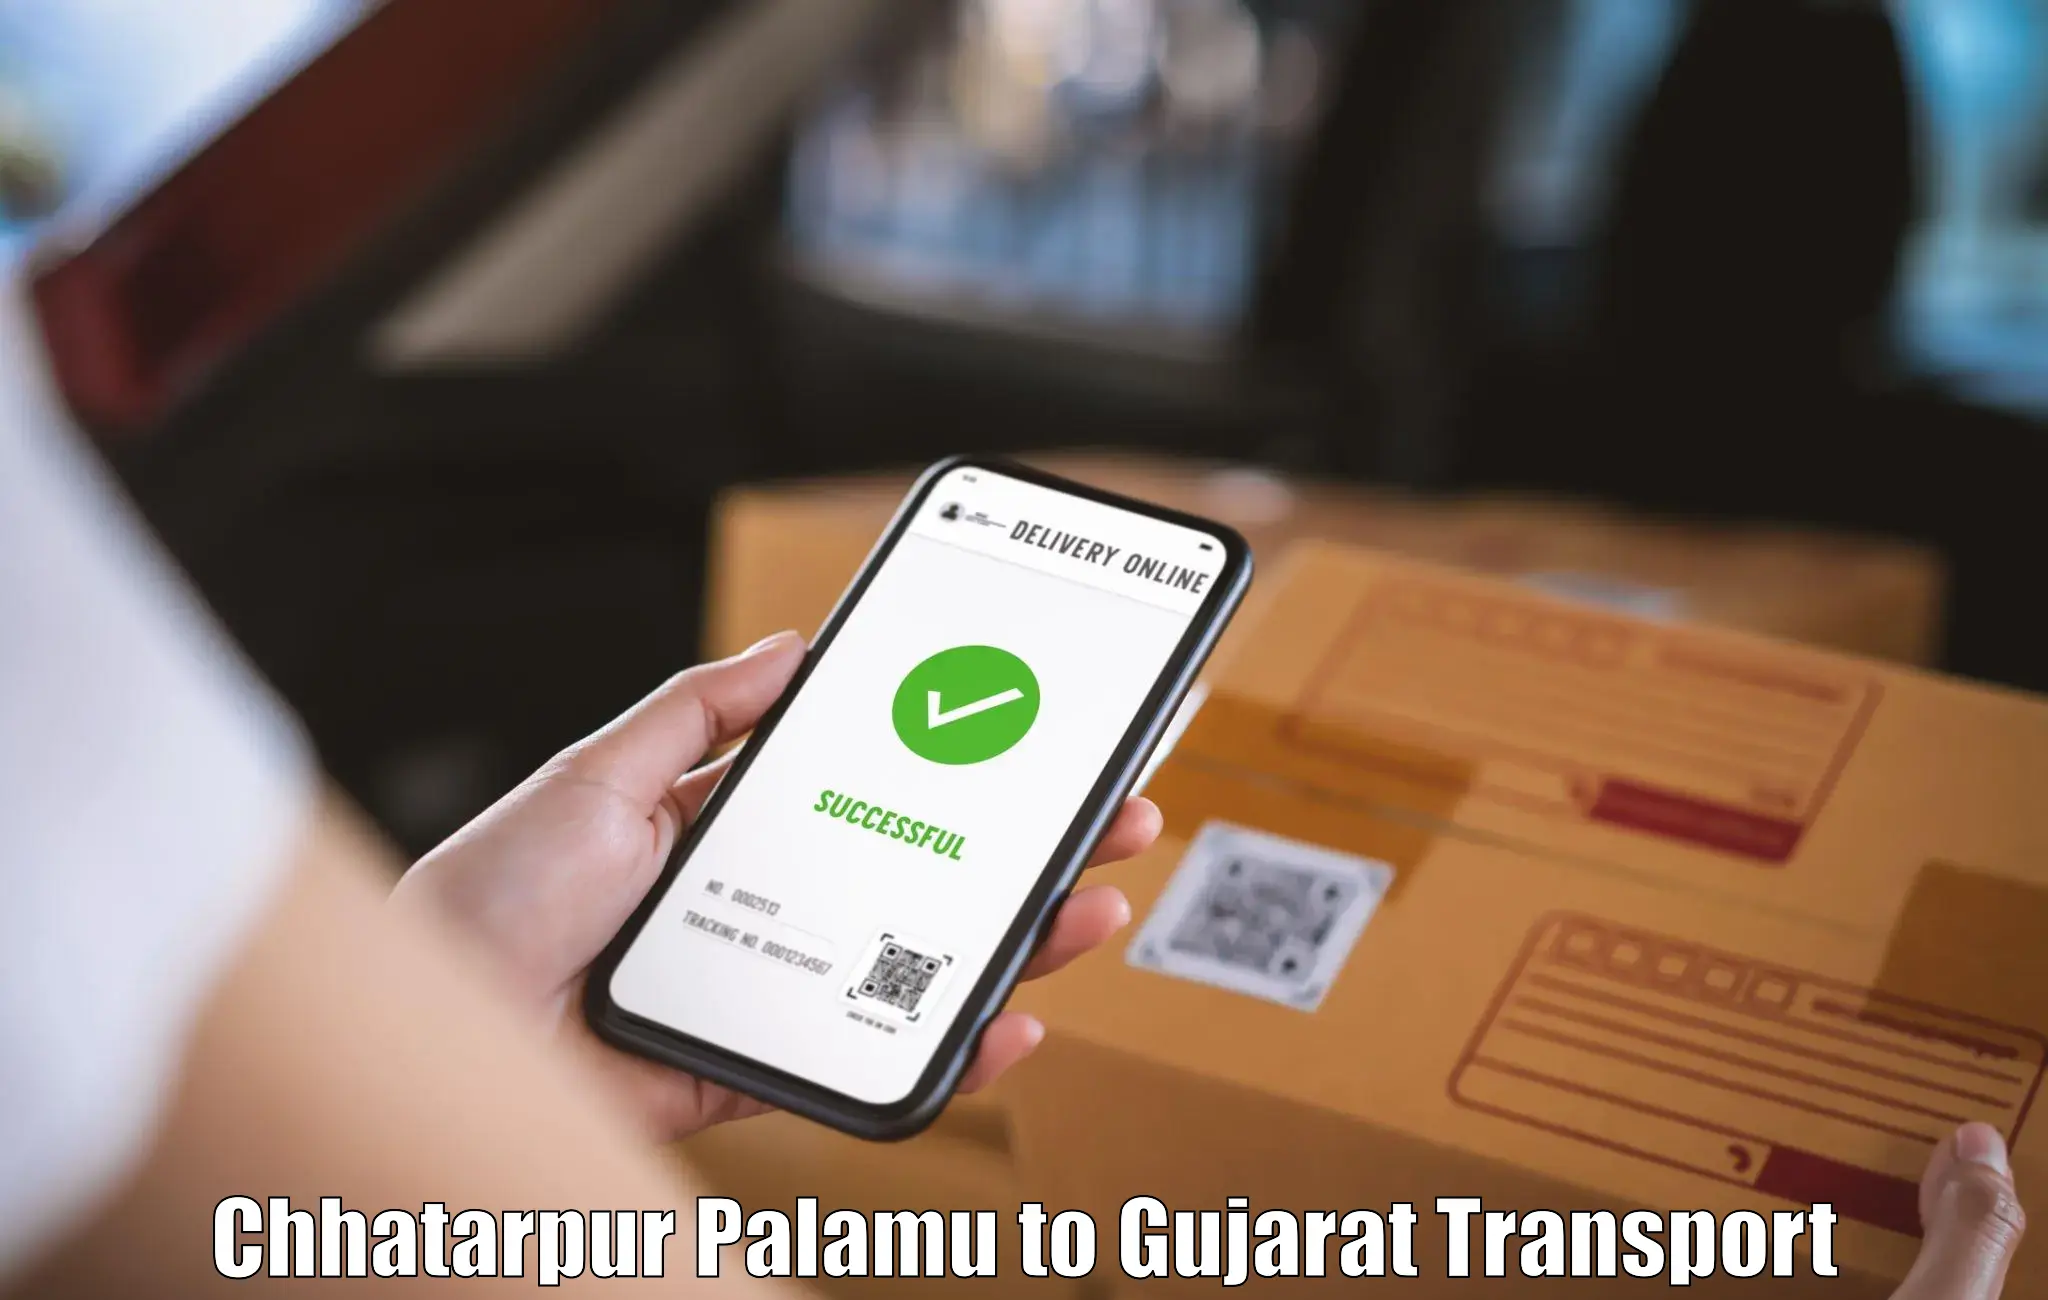 Pick up transport service Chhatarpur Palamu to Kutiyana